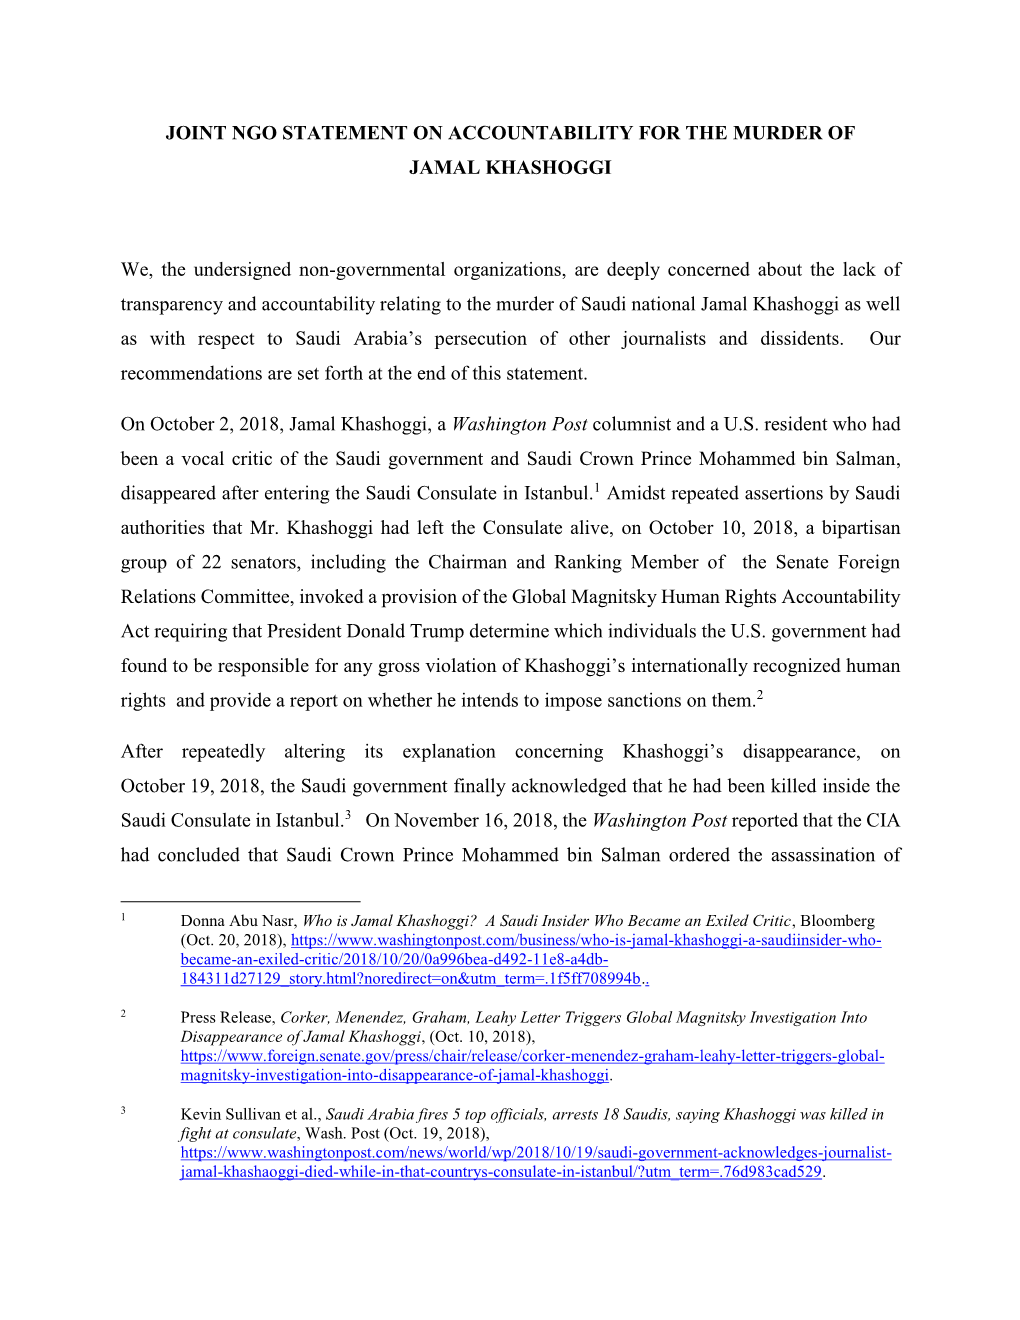 Joint Ngo Statement on Accountability for the Murder of Jamal Khashoggi